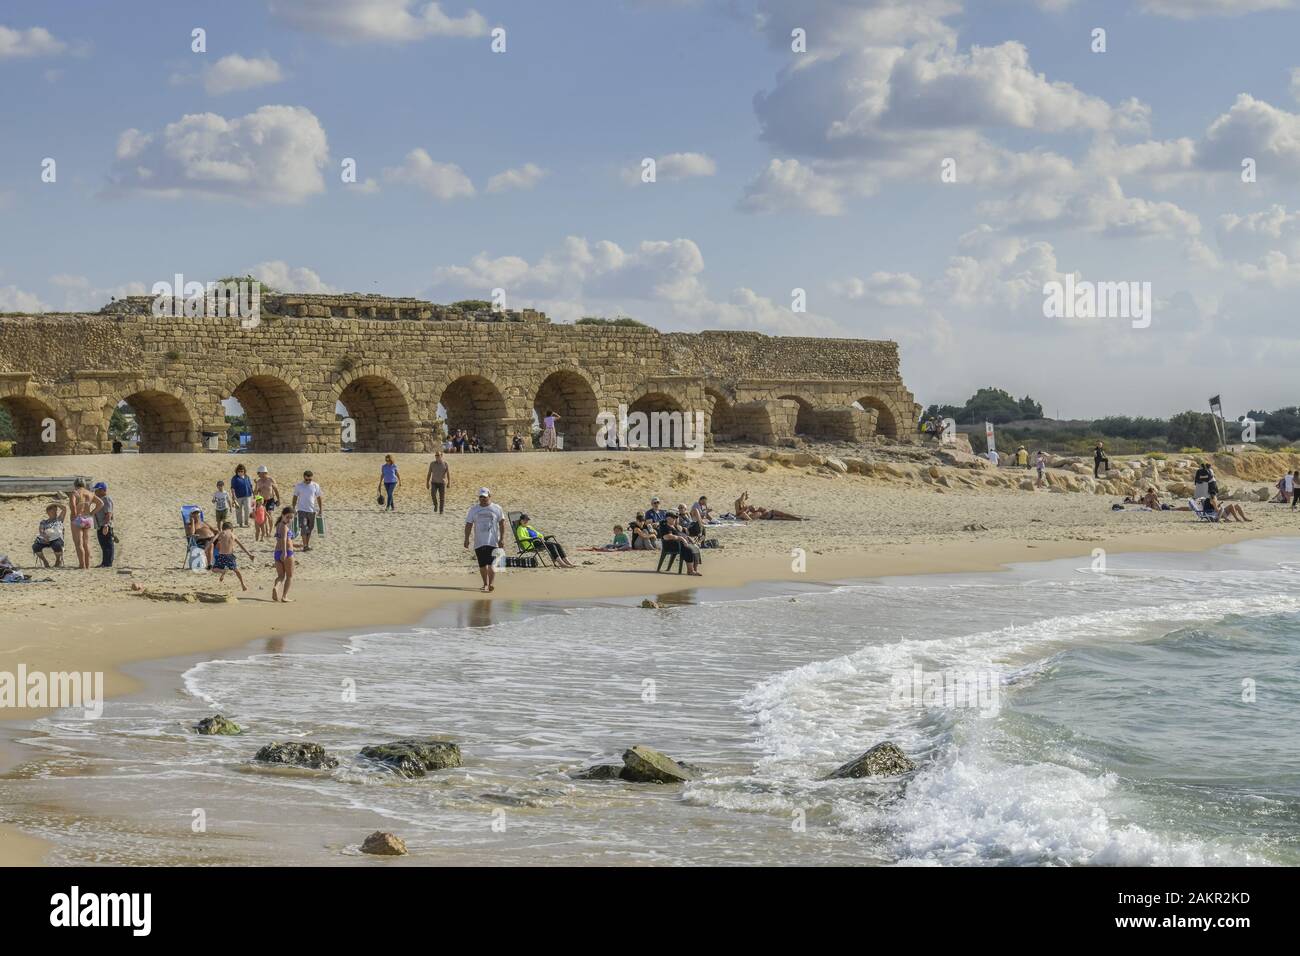 Aquaeduct am Strand, Caesarea, Israel Stock Photo